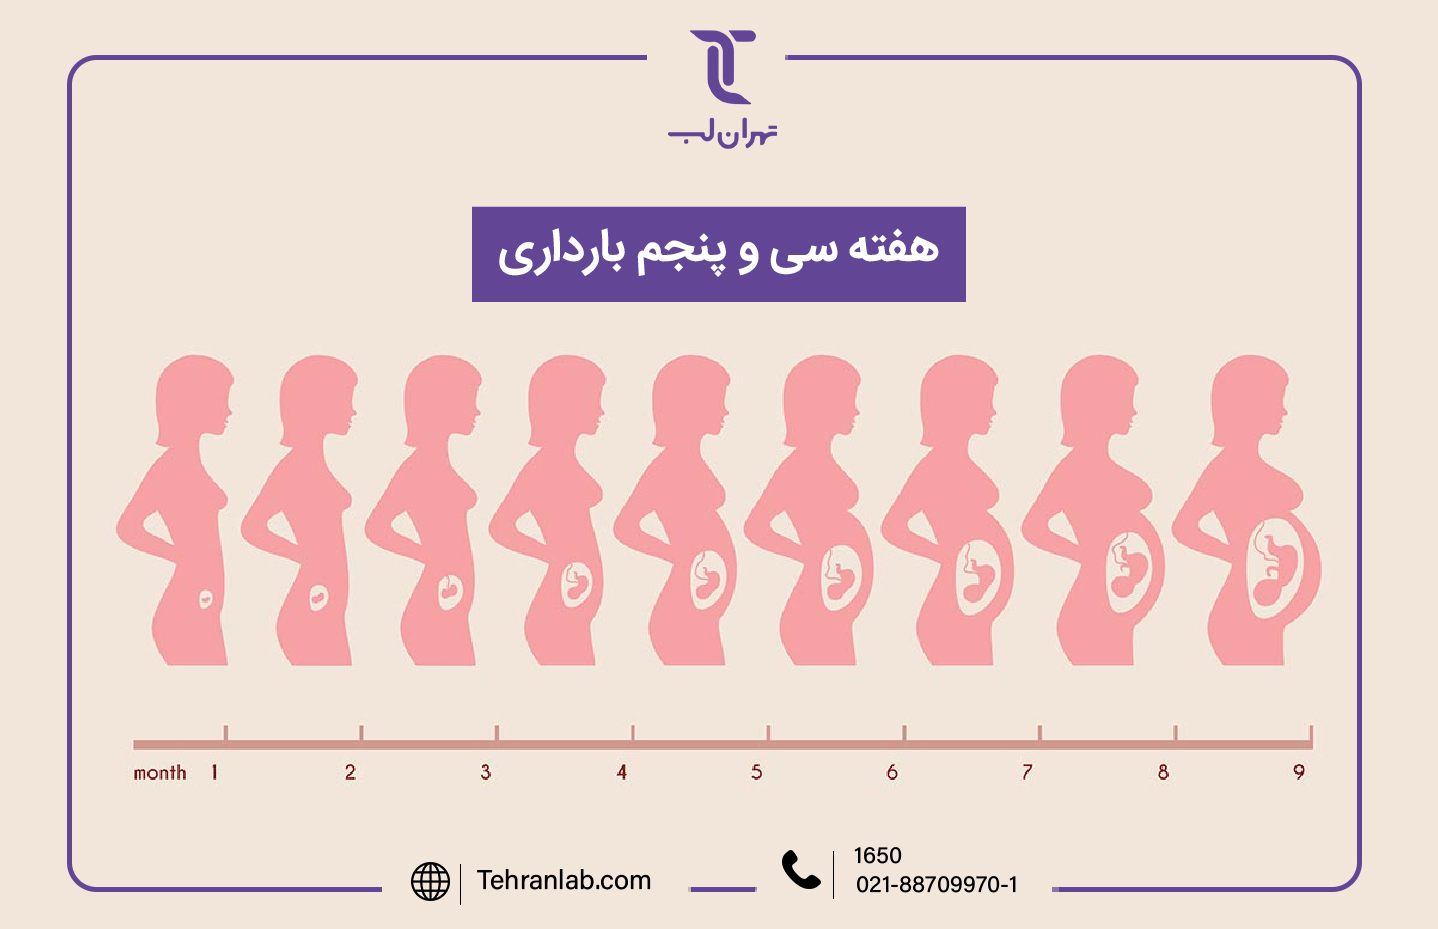 همه چیز درباره هفته سی و پنجم (35) بارداری | آزمایشگاه تهران لب